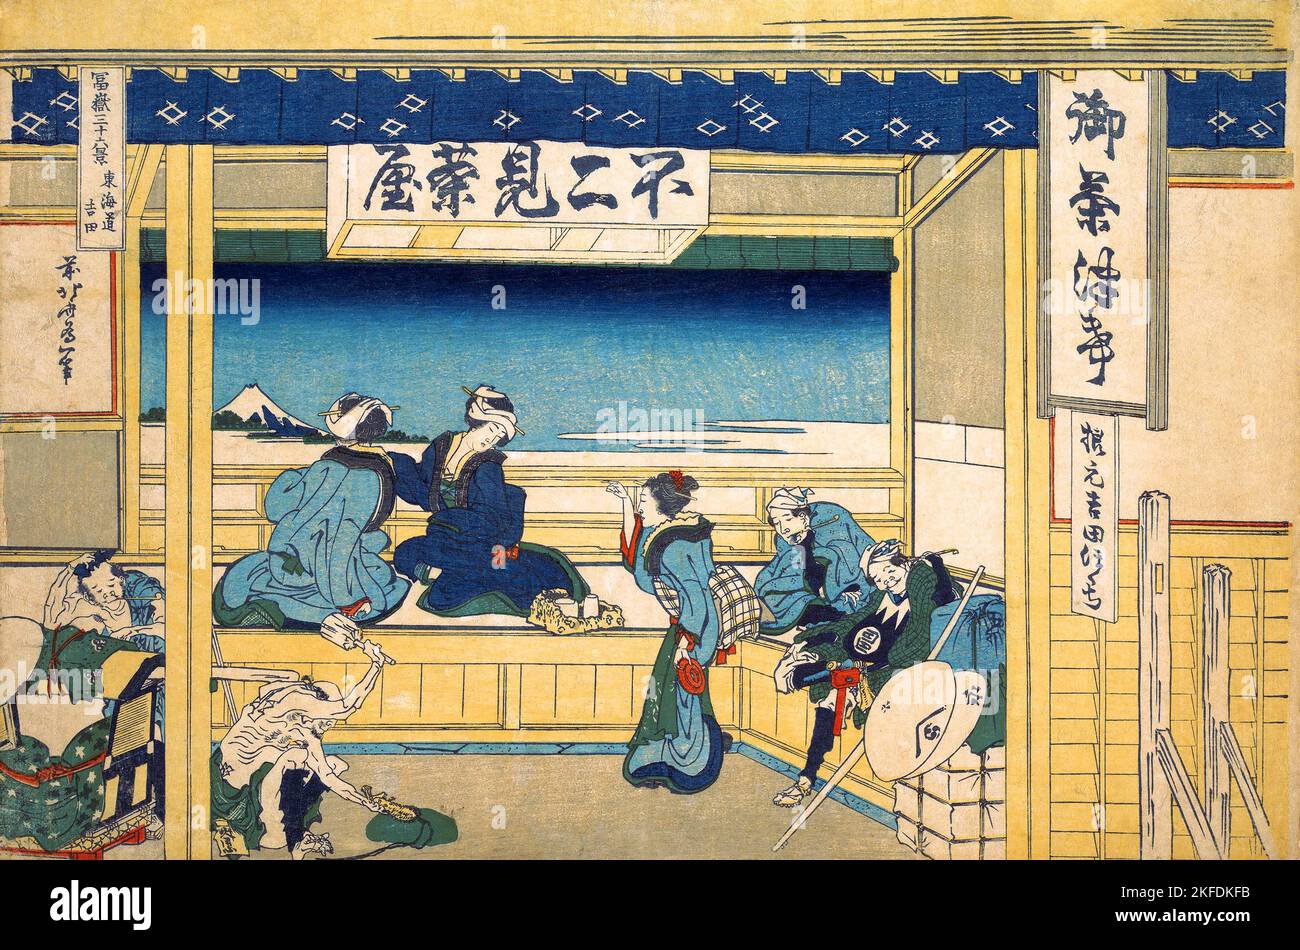 Giappone: 'Yoshida sul Tokaido'. Ukiyo-e stampa in blocco della serie «trentasei viste del Monte Fuji» di Katsushika Hokusai (31 ottobre 1760 - 10 maggio 1849), 1830. “trentasei viste del Monte Fuji” è una serie di stampe in legno realizzate dall’artista giapponese Katsushika Hokusai. La serie raffigura il Monte Fuji in stagioni e condizioni meteorologiche diverse da una varietà di luoghi e distanze. Si compone di 46 stampe create tra il 1826 e il 1833. I primi 36 sono stati inclusi nella pubblicazione originale e, a causa della loro popolarità, altri 10 sono stati aggiunti dopo la pubblicazione originale. Foto Stock